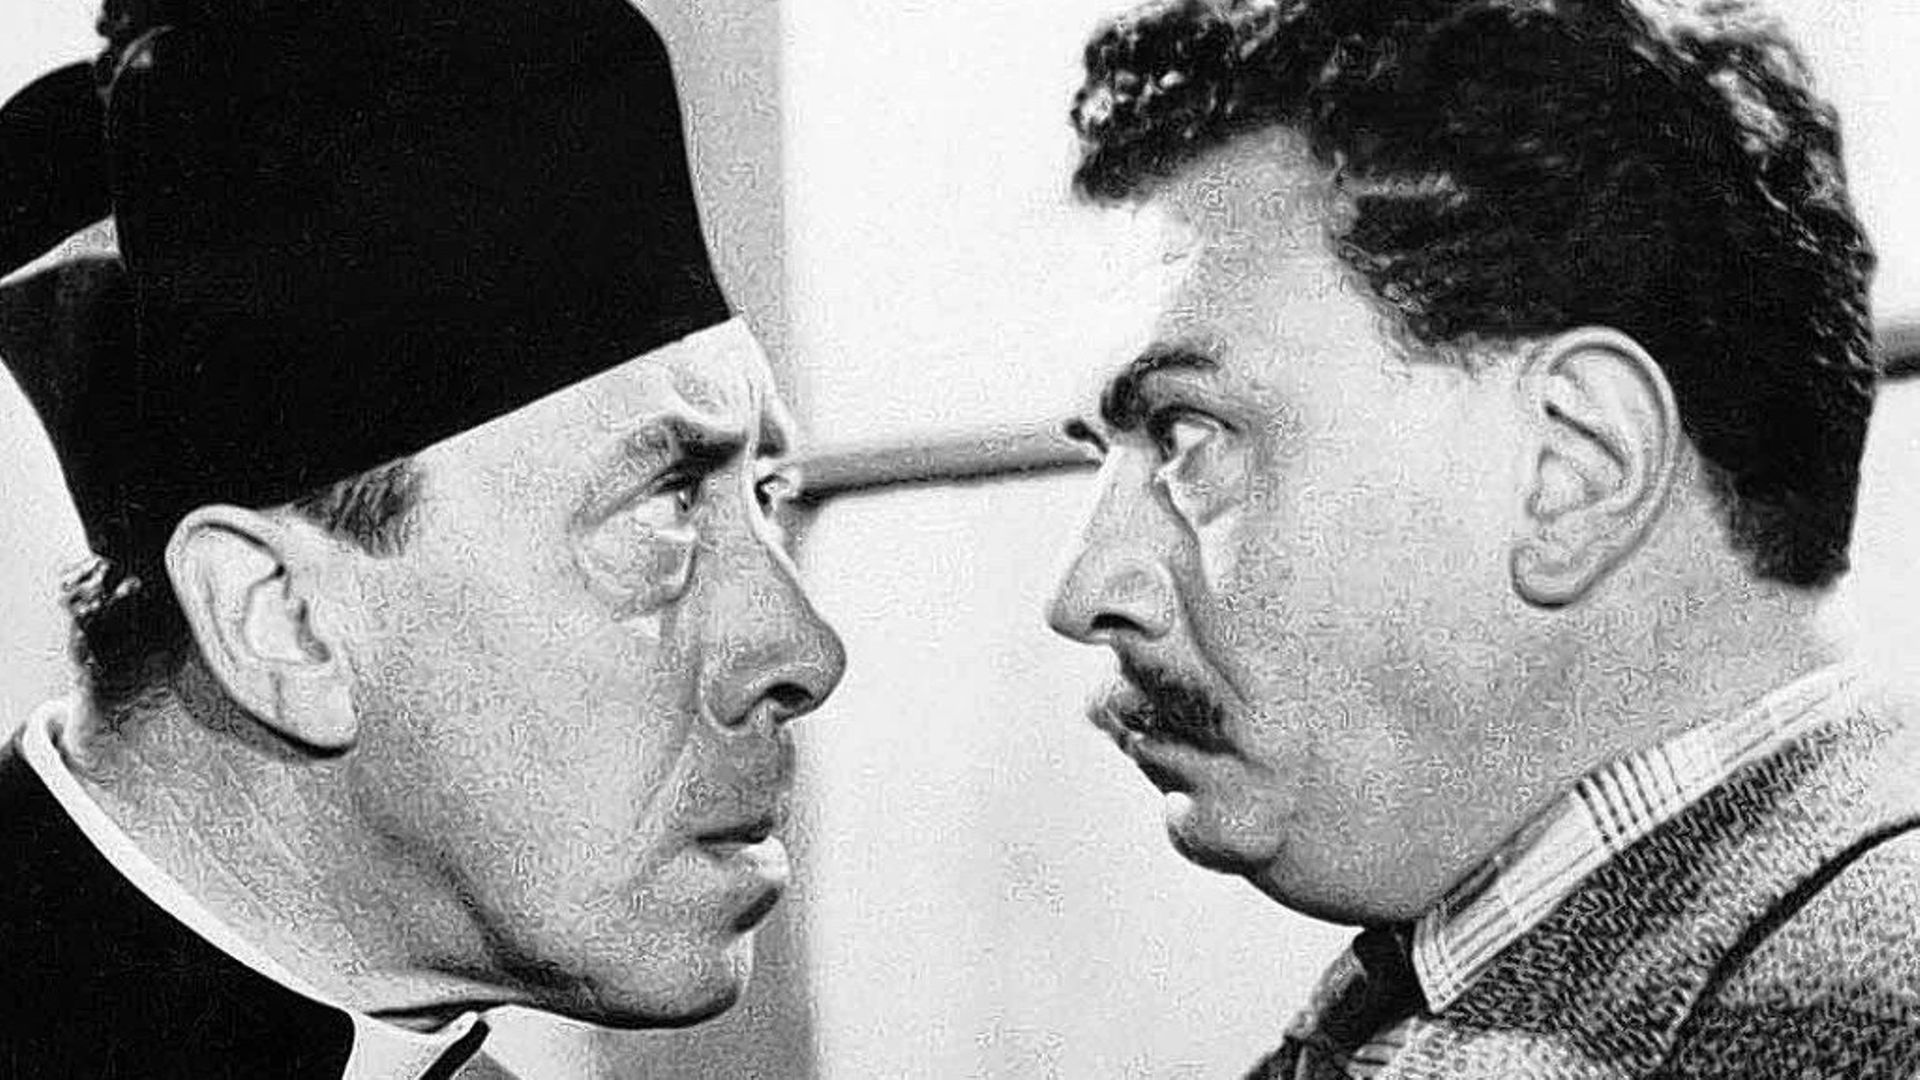 Don Camillo et Peppone soit Fernandel et Gino Cervi